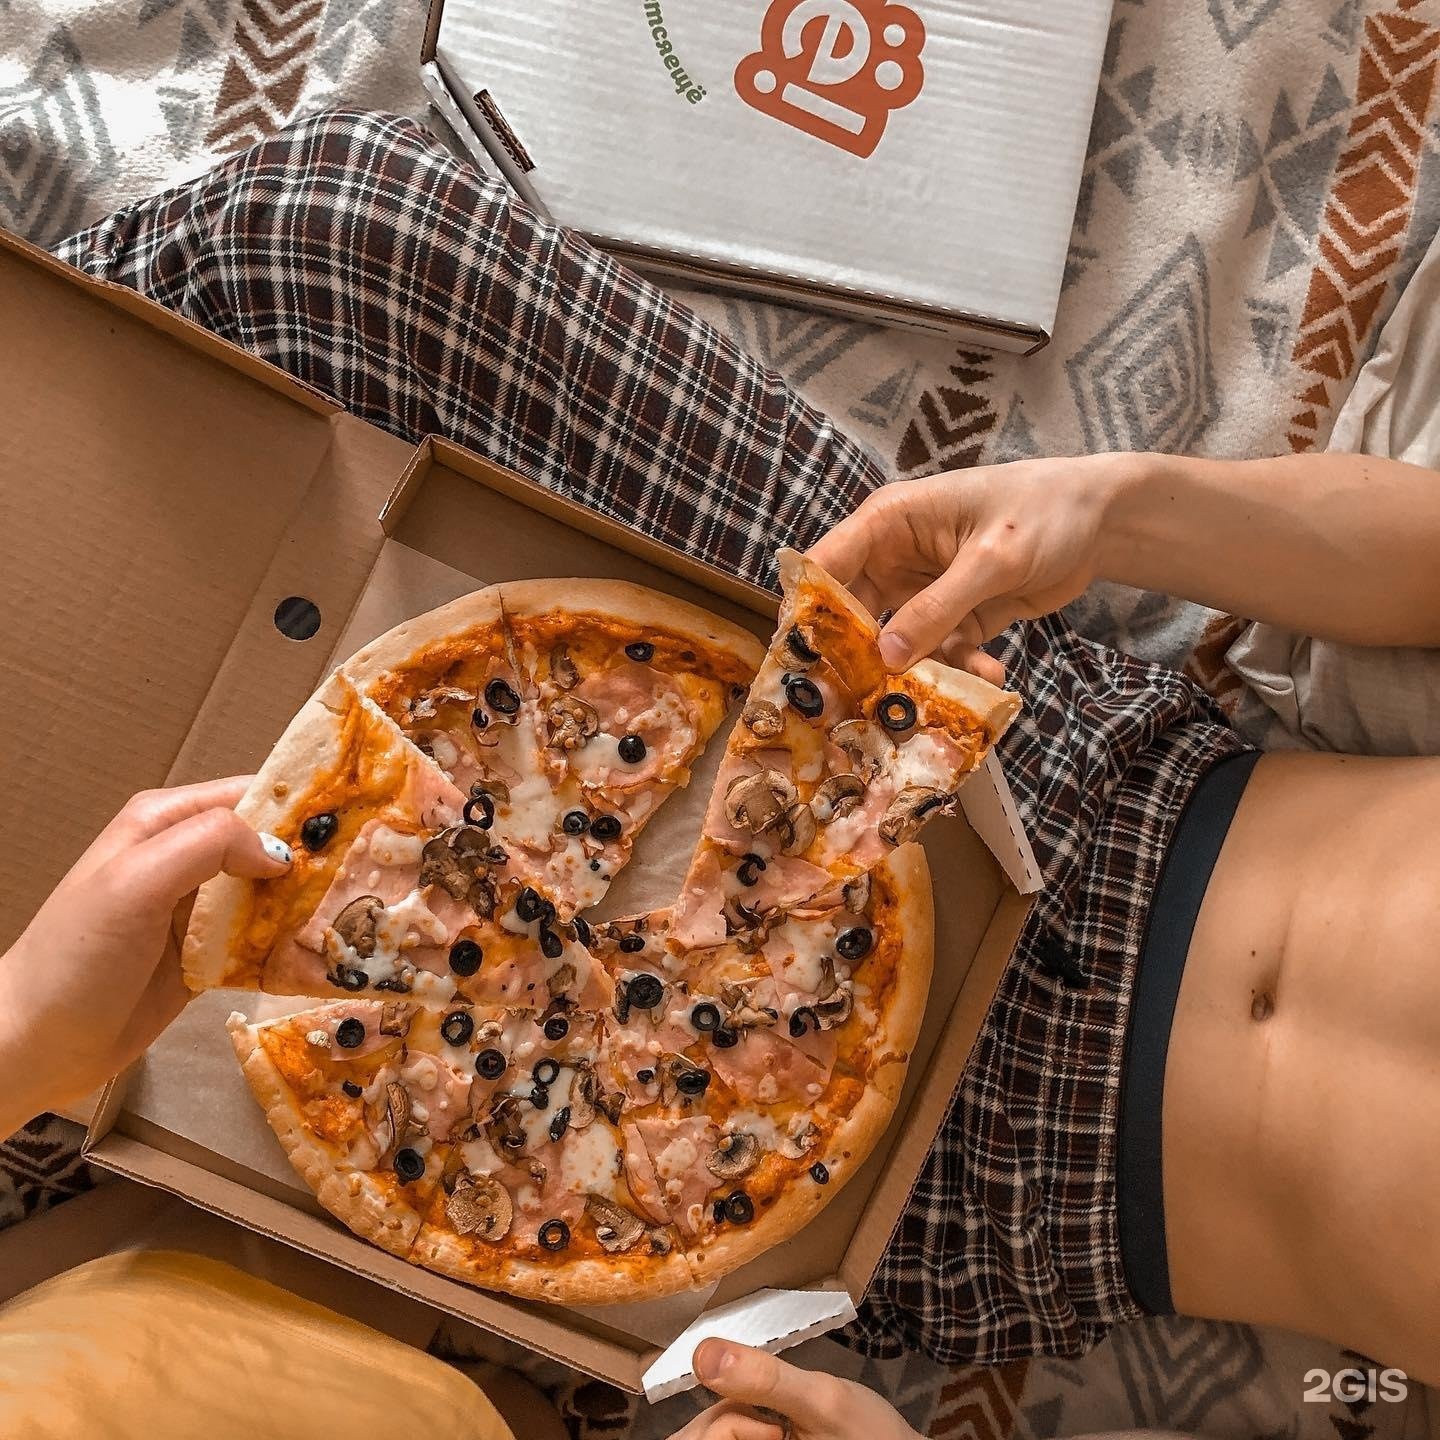 лучшая пицца в ижевске с доставкой фото 83